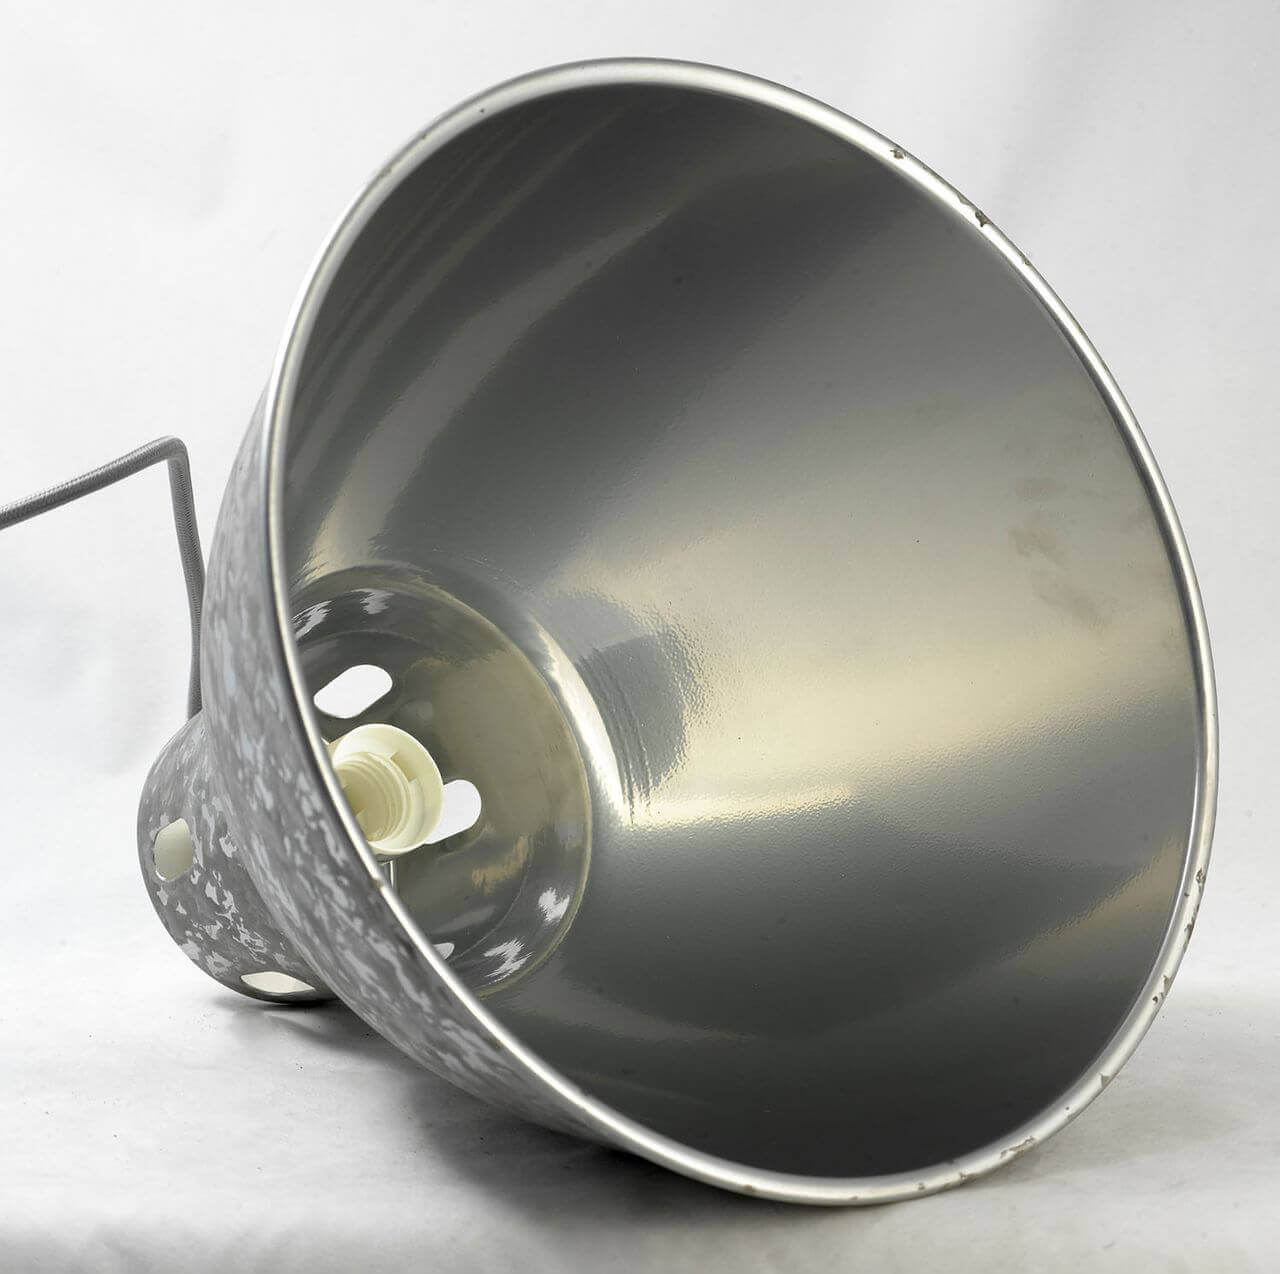 Подвесной светильник Lussole Loft LSP-9503